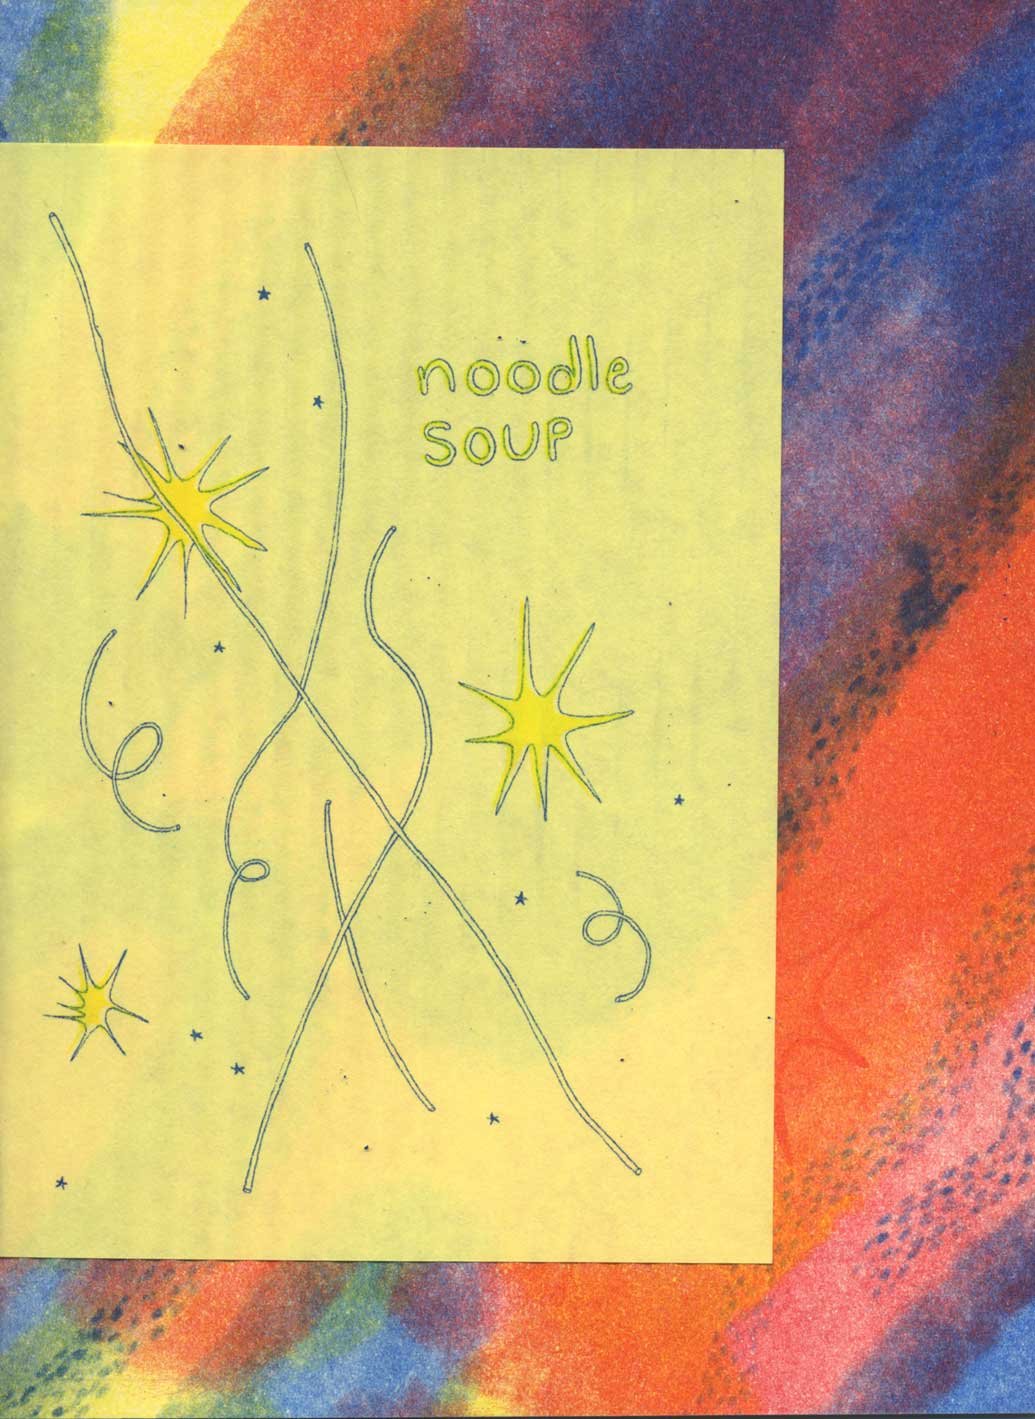 Noodle Soup (cover)